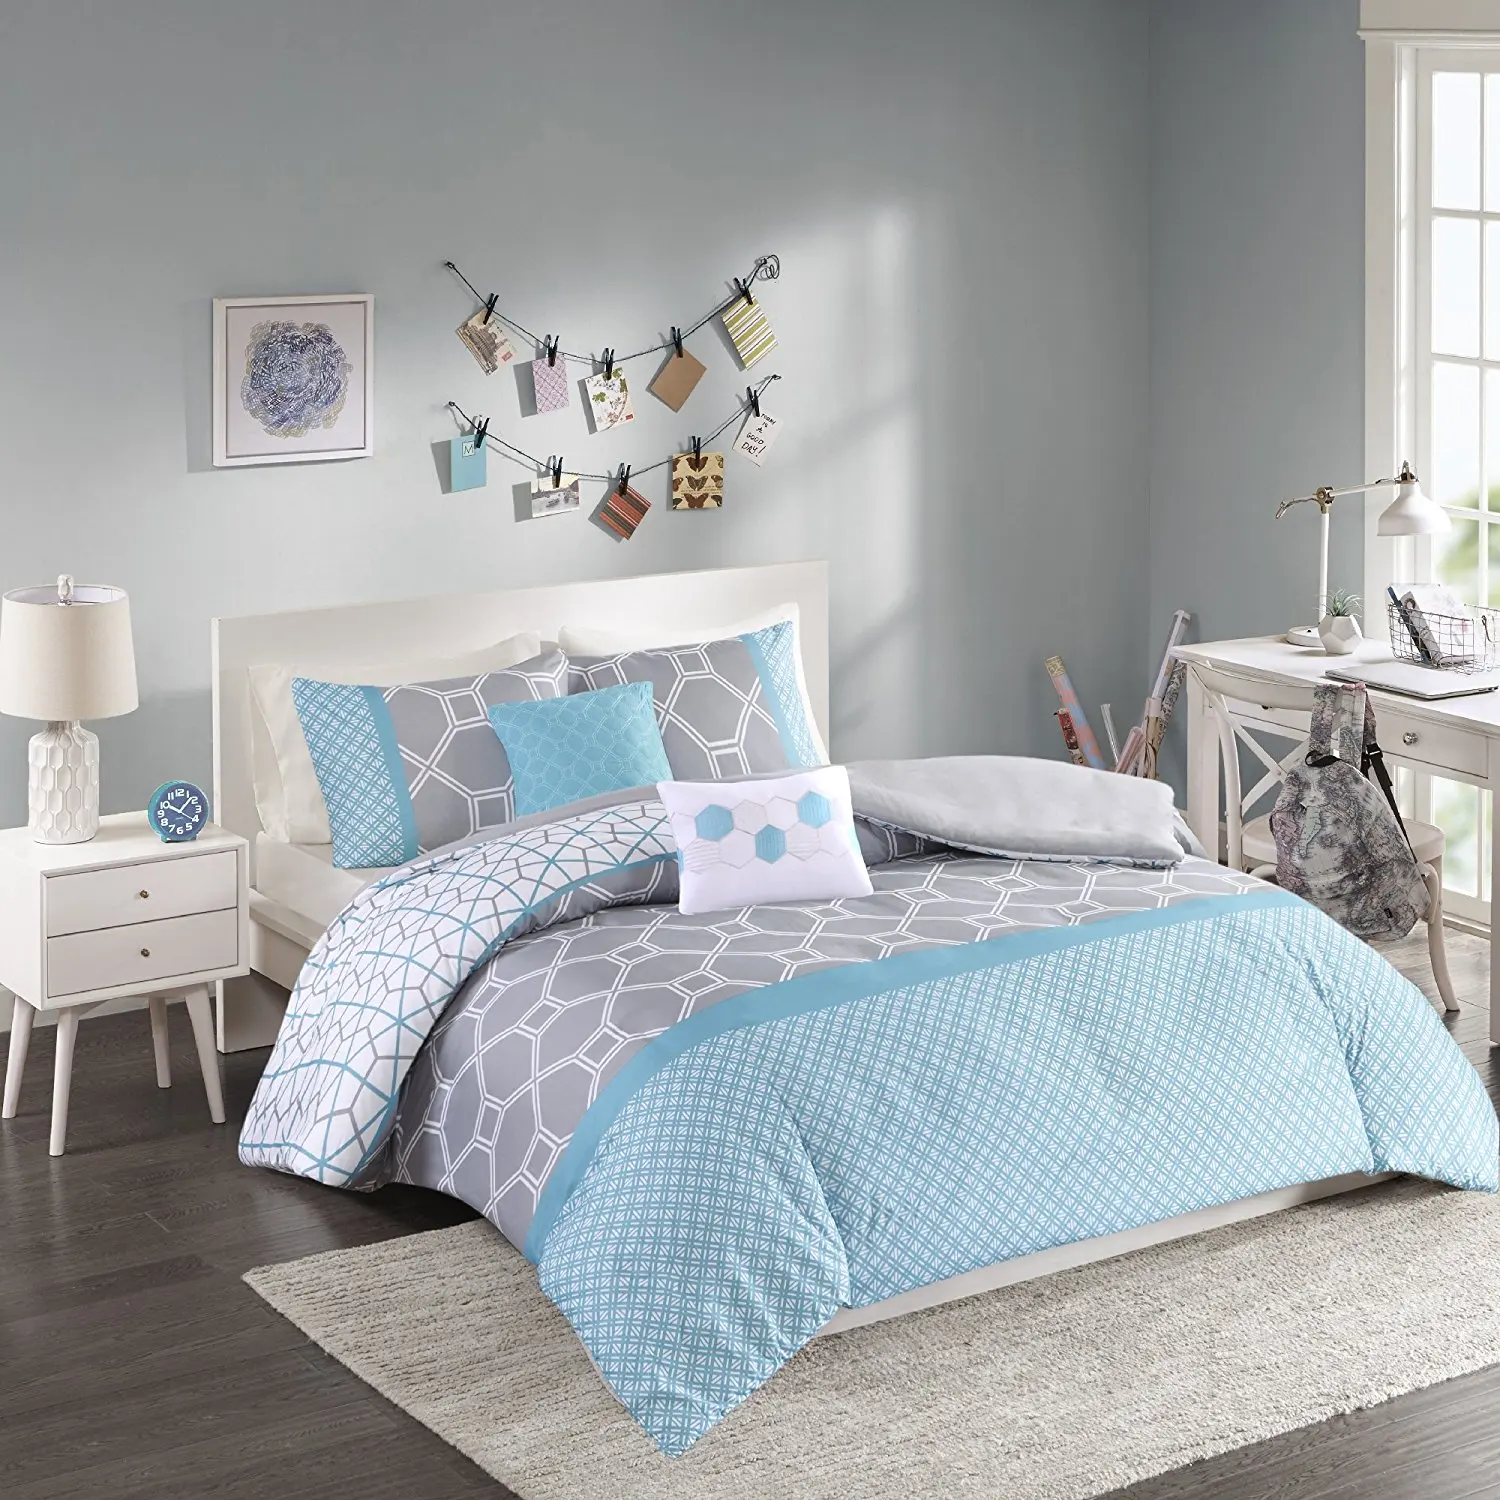 Buy Intelligent Design Melissa King Size Bed Comforter Set Navy